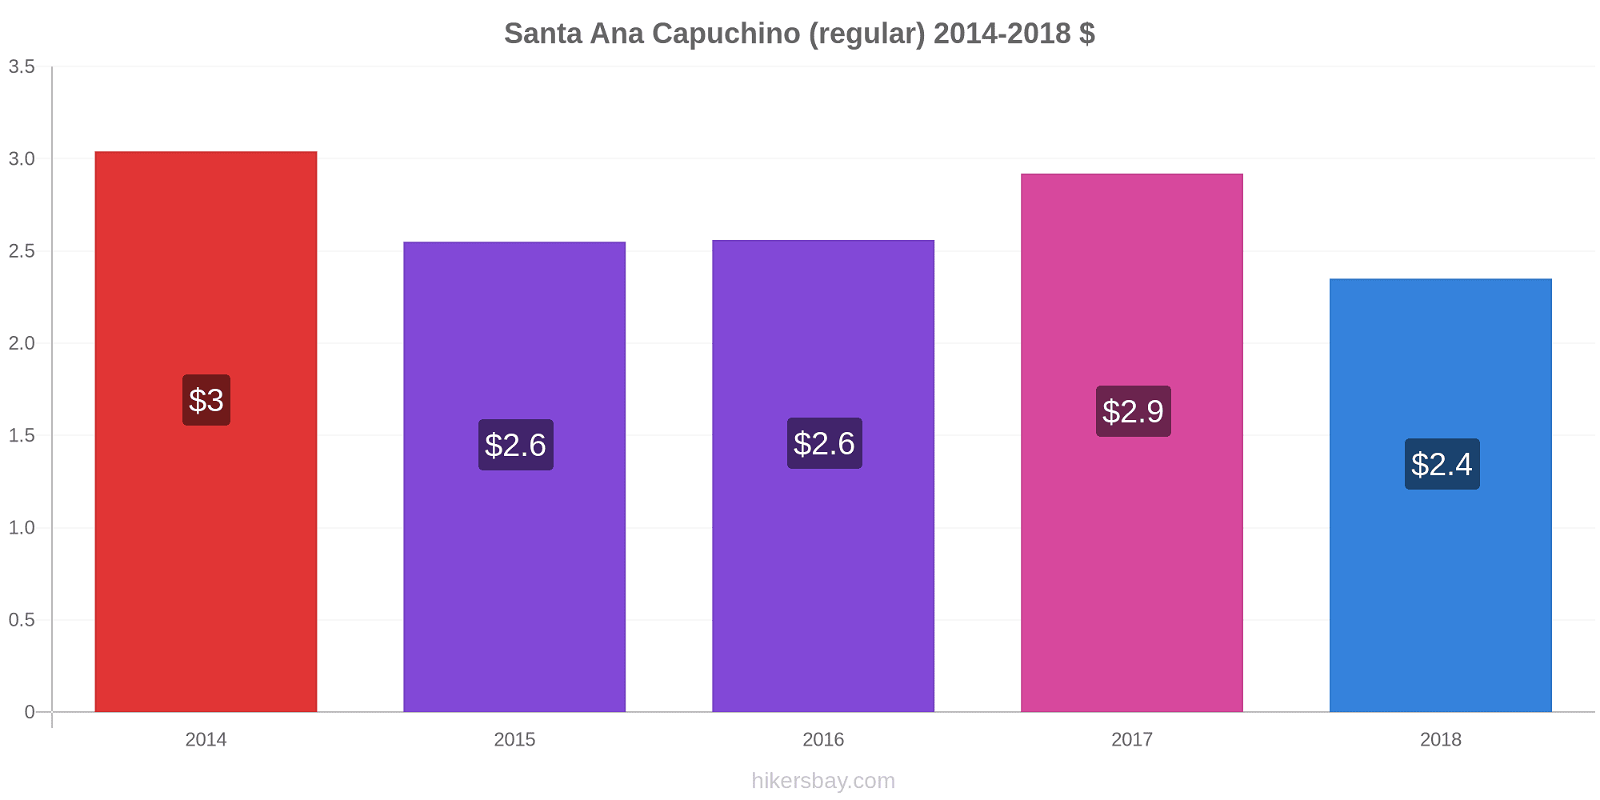 Santa Ana cambios de precios Capuchino (regular) hikersbay.com